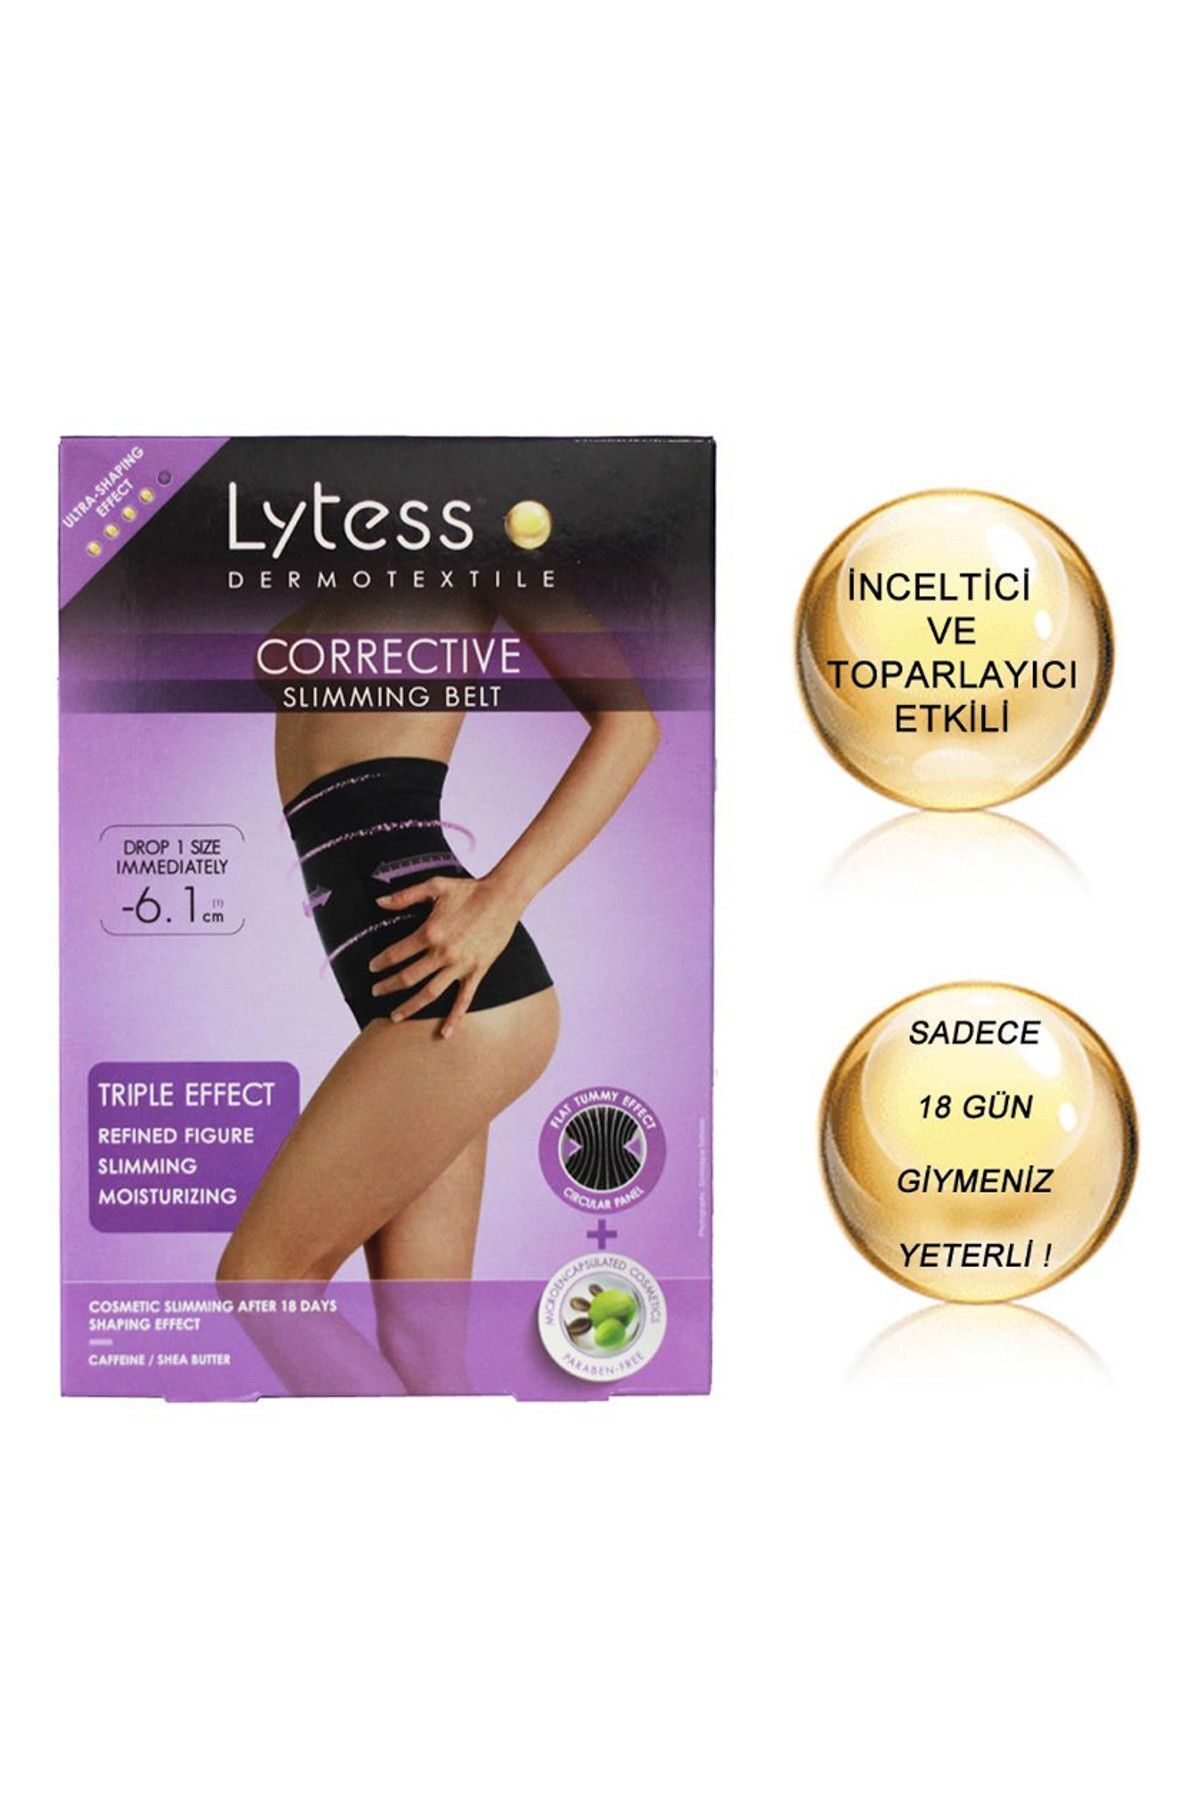 Lytess Corrective Slimming Belt Panties - Inceltici Ve Sıkılaştırıcı Etkili Karın Korsesi Nude/chair (S/m)